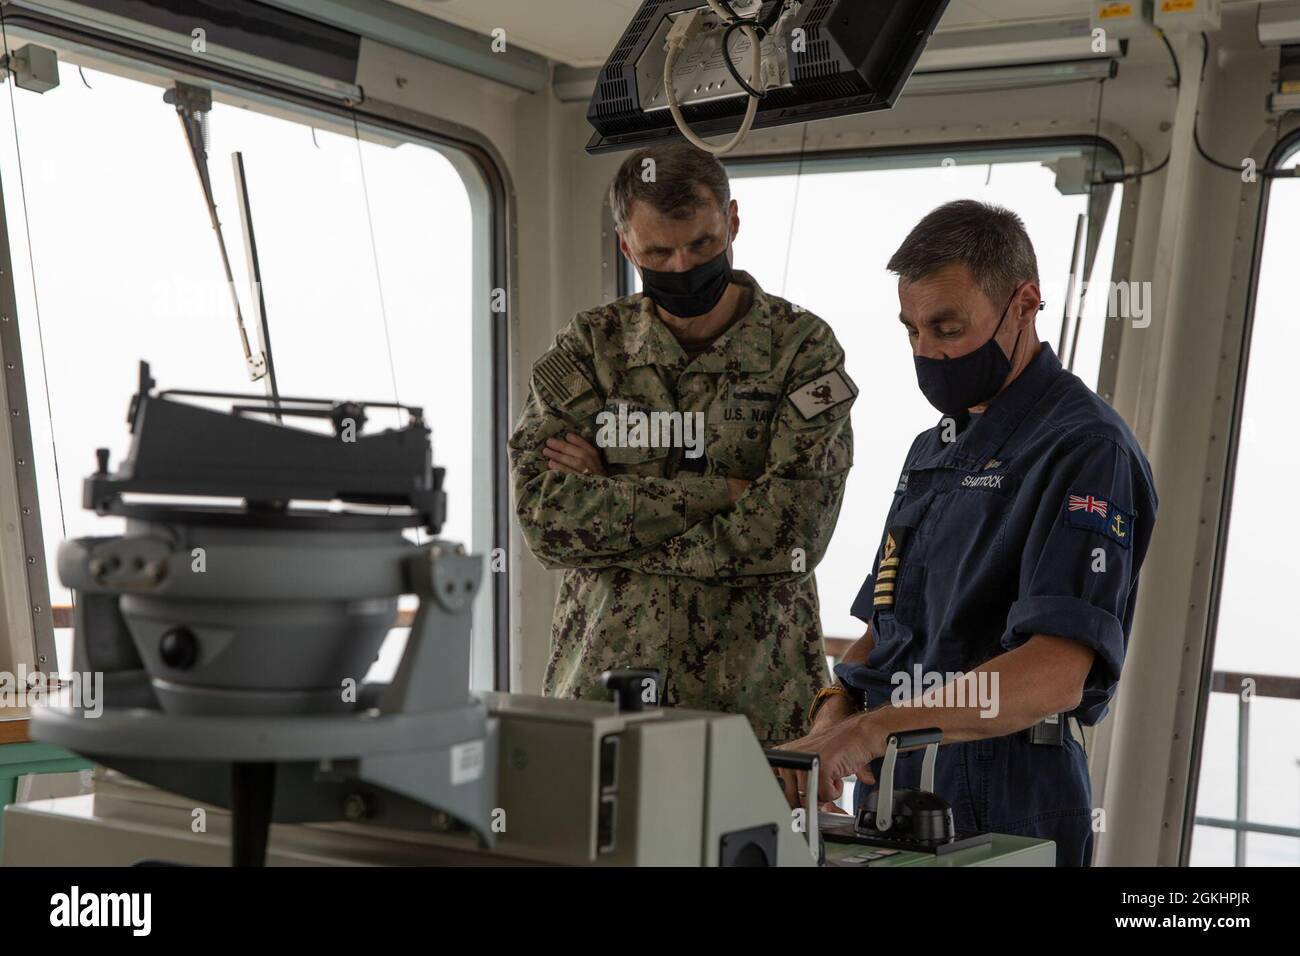 210426-AUN662-1229 GOLFO ARÁBIGO (26 de abril de 2021) – Capt. Auxiliar de la flota real Sam Shattock, oficial al mando de Royal Fleet muelle del buque de desembarco auxiliar de la RFA Cardigan Bay (L 3009), der. y trasero ADM. Curt Renshaw, comandante adjunto del Comando Central de las Fuerzas Navales de los Estados Unidos y la Flota de los Estados Unidos 5th, habla sobre las capacidades de radar durante el ejercicio Artemis Trident 21 en el Golfo Arábigo, abril de 26. Artemis Trident 21 es un ejercicio multilateral de contramedidas contra las minas entre el Reino Unido, Australia, Francia y EE.UU., diseñado para mejorar la interoperabilidad mutua y las capacidades en la caza y remoción de minas, el secu marítimo Foto de stock